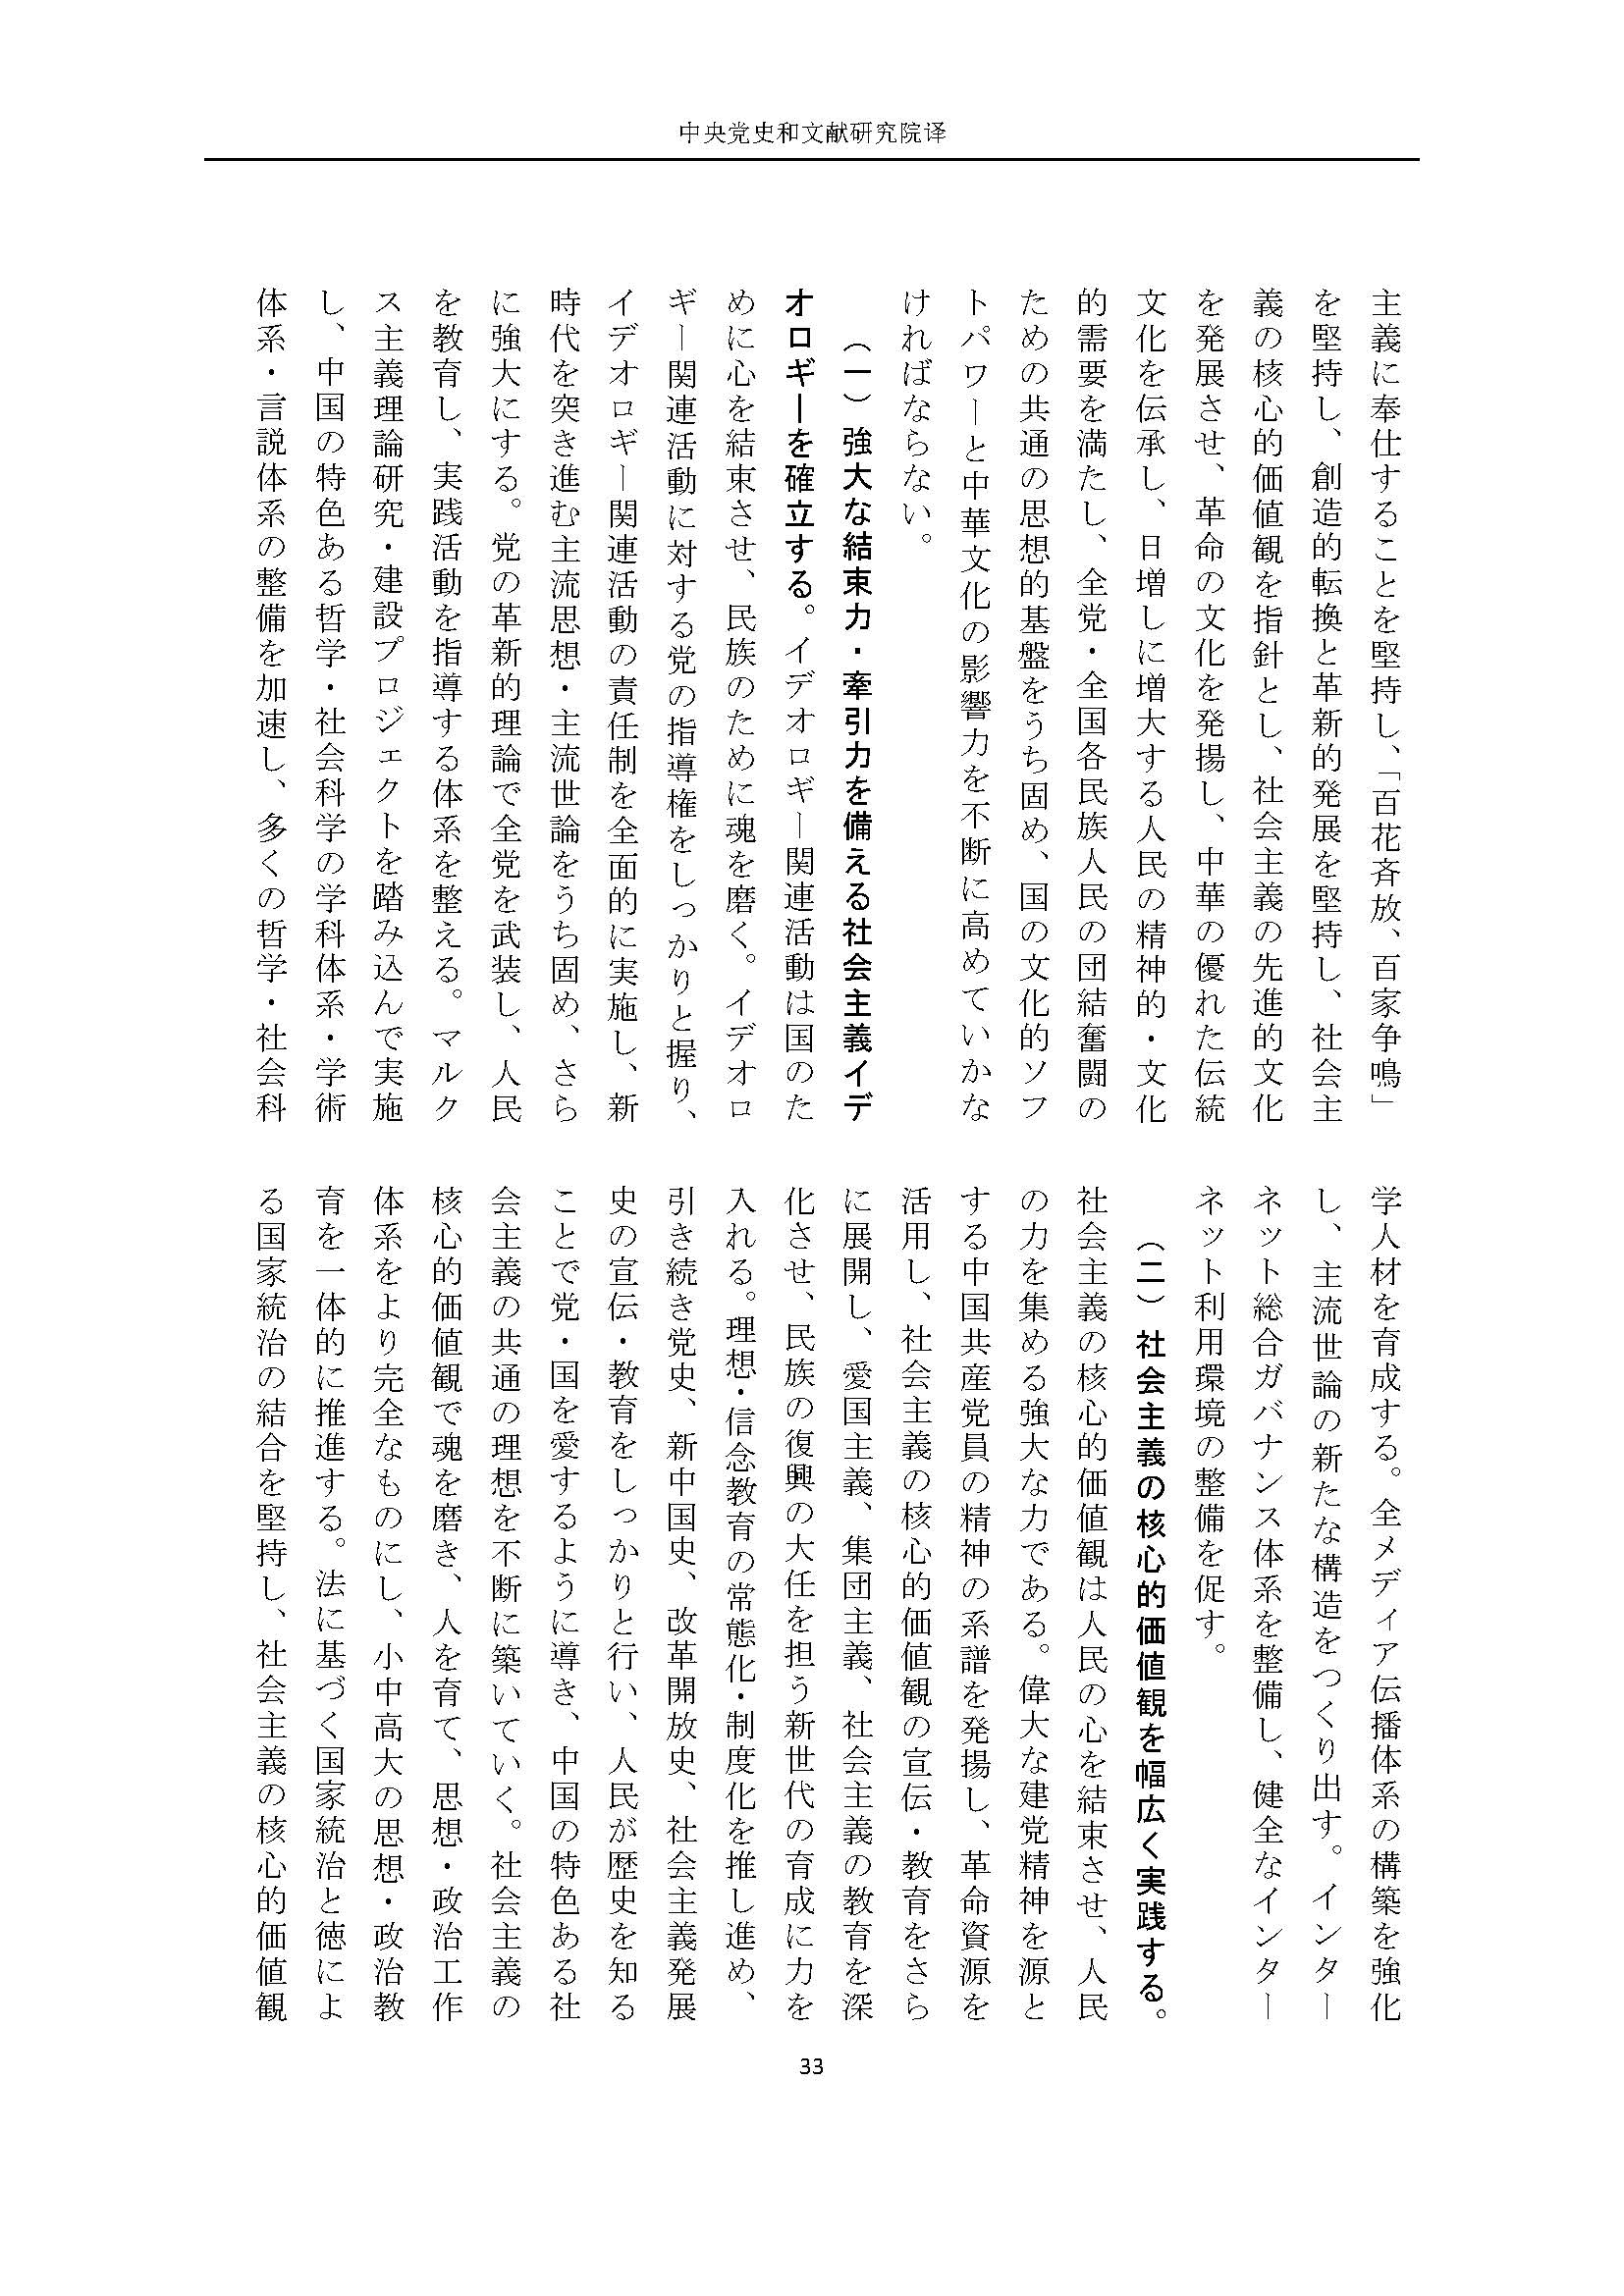 二十大报告（日文全文）_页面_34